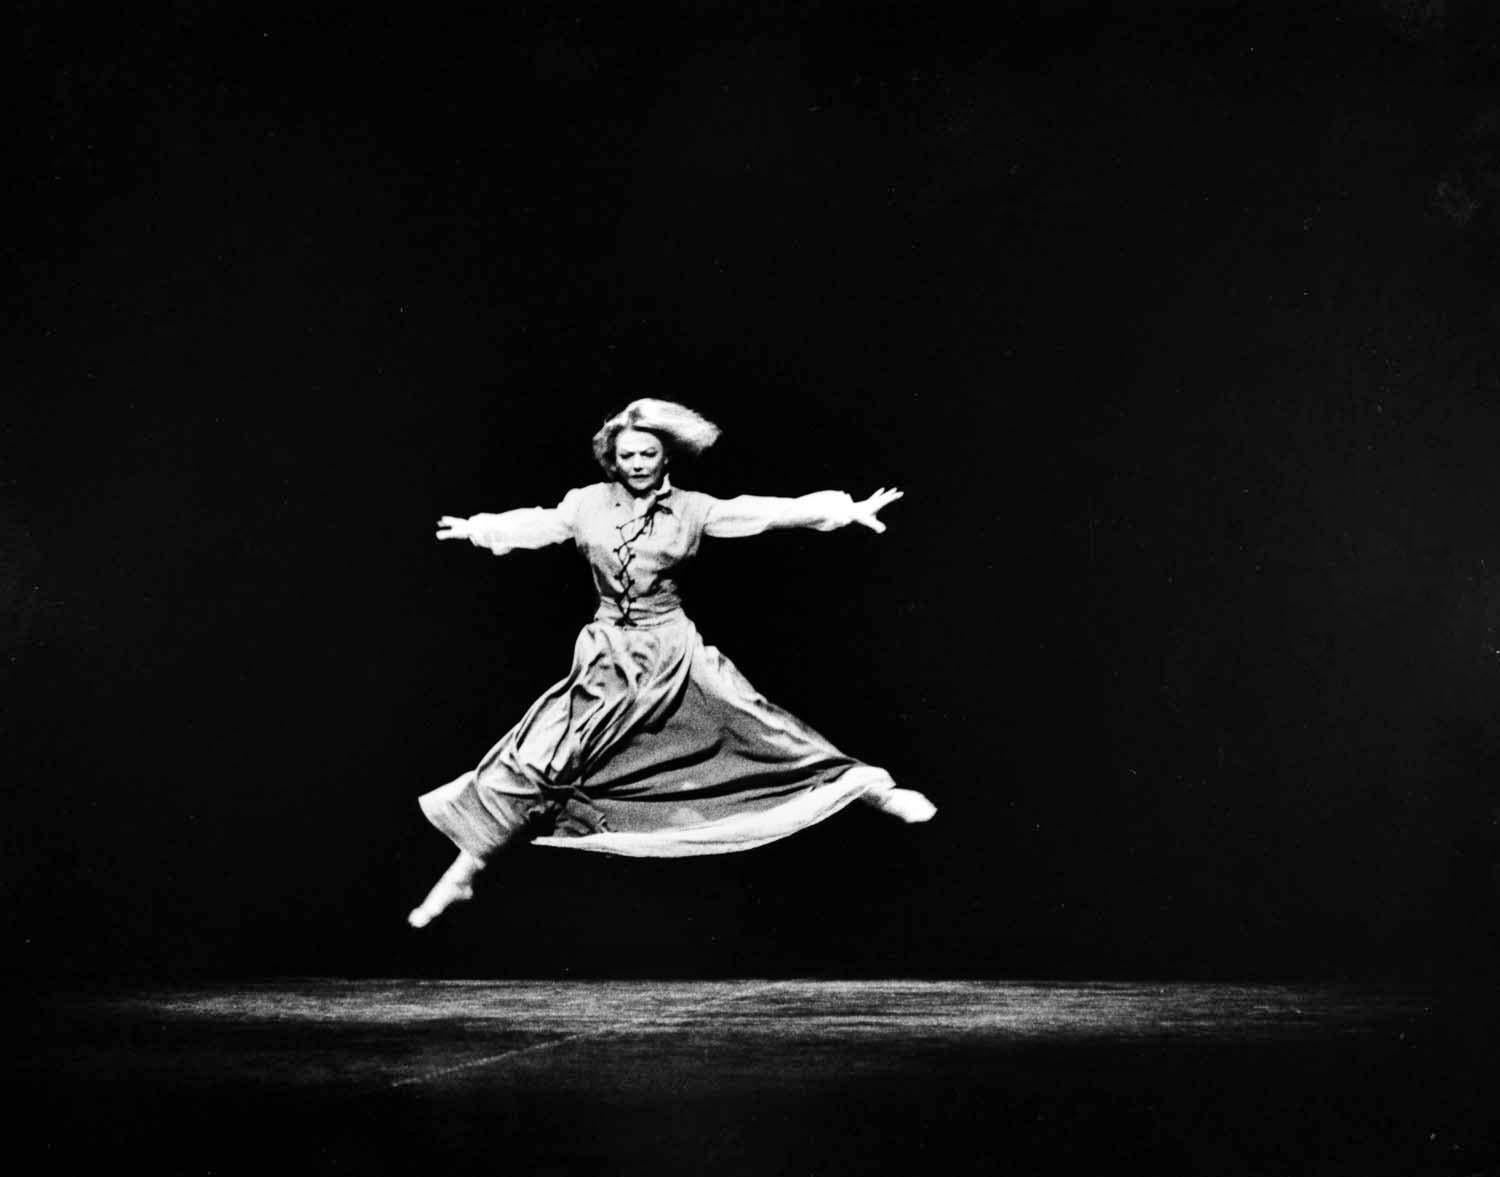 11 x 14" alte Silbergelatinefotografie der Choreografin und modernen Tänzerin Valerie Bettis bei der Aufführung von "As I Lay Dying", 1965. Signiert von Jack Mitchell auf der Rückseite des Drucks.  Kommt direkt aus dem Jack Mitchell Archiv mit einem